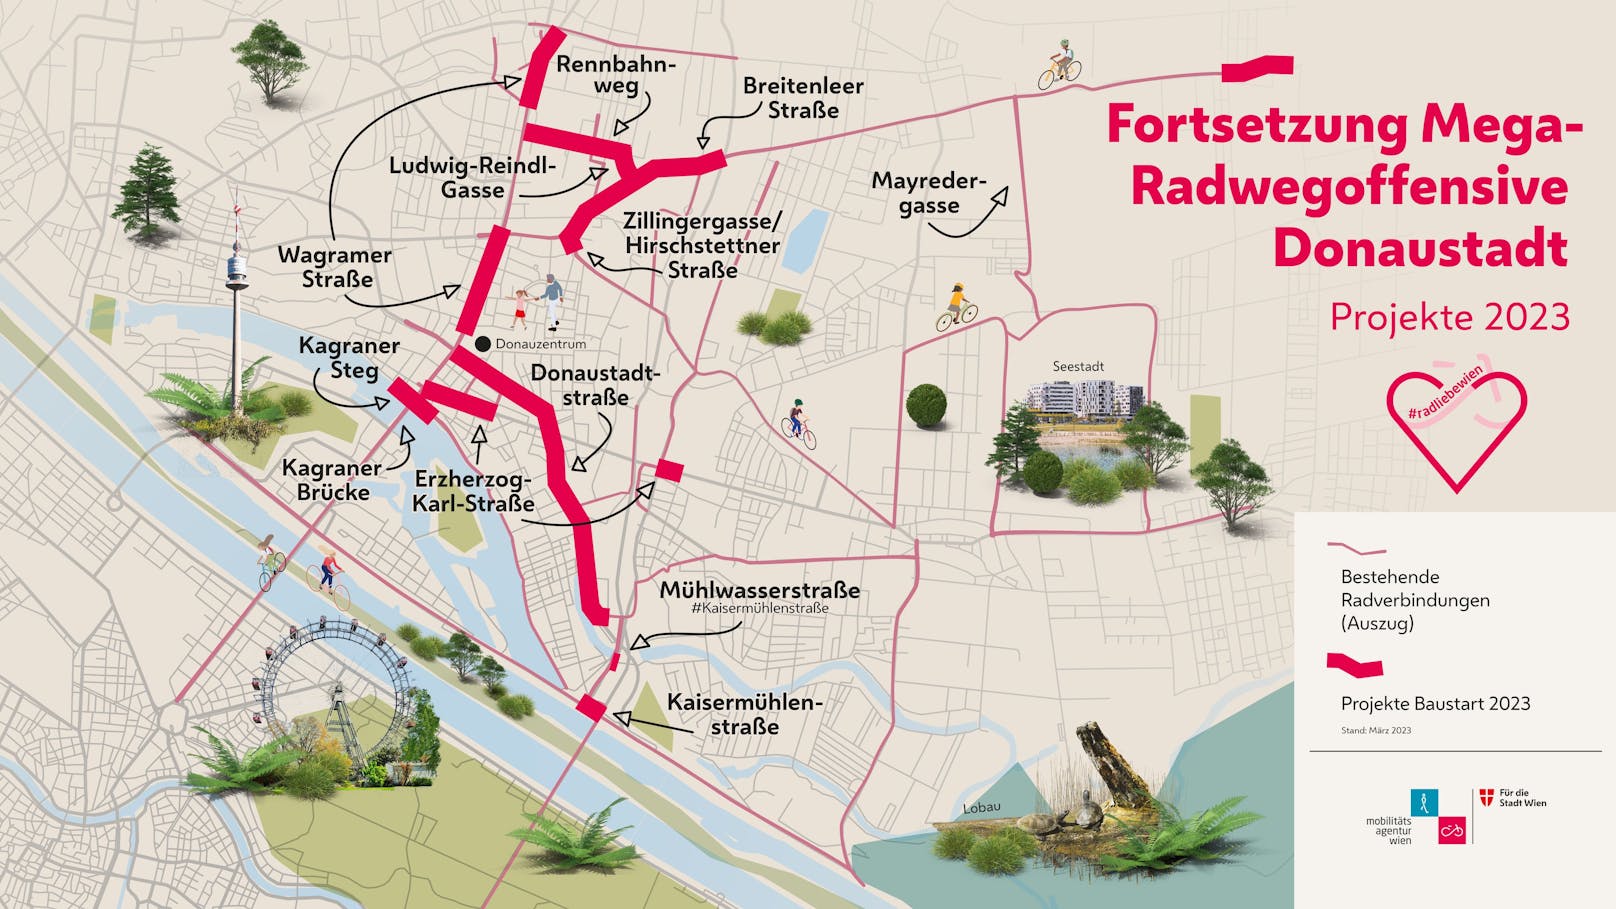 Die Radwegoffensive in der Donaustadt wird im Jahr 2023 fortgesetzt